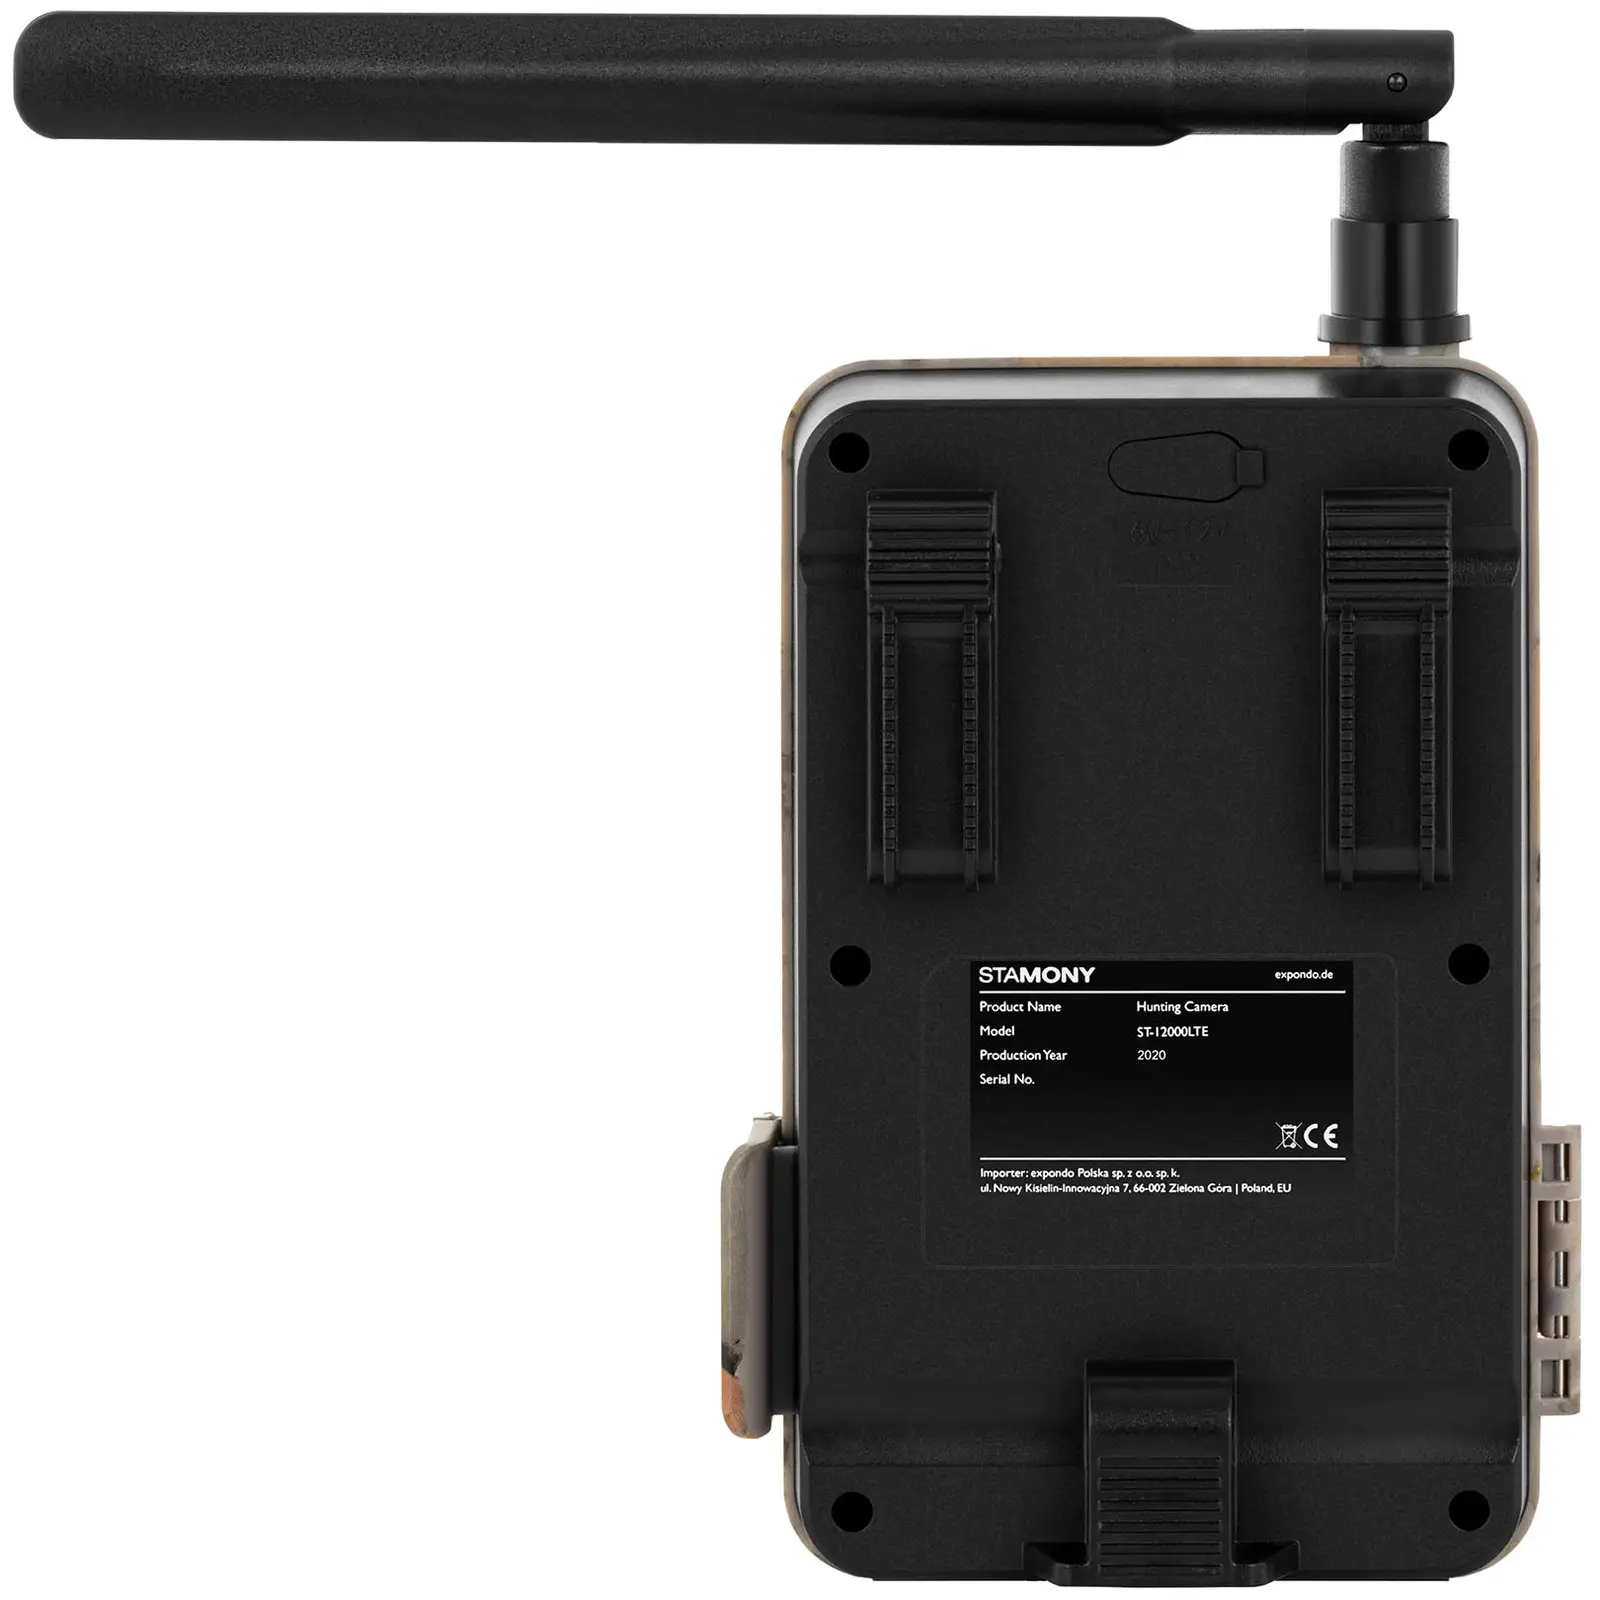 Telecamera da caccia - 8 MP - Full HD - 44 LED IR - 20 m - 0,3 s - LTE con ripetitore GSM